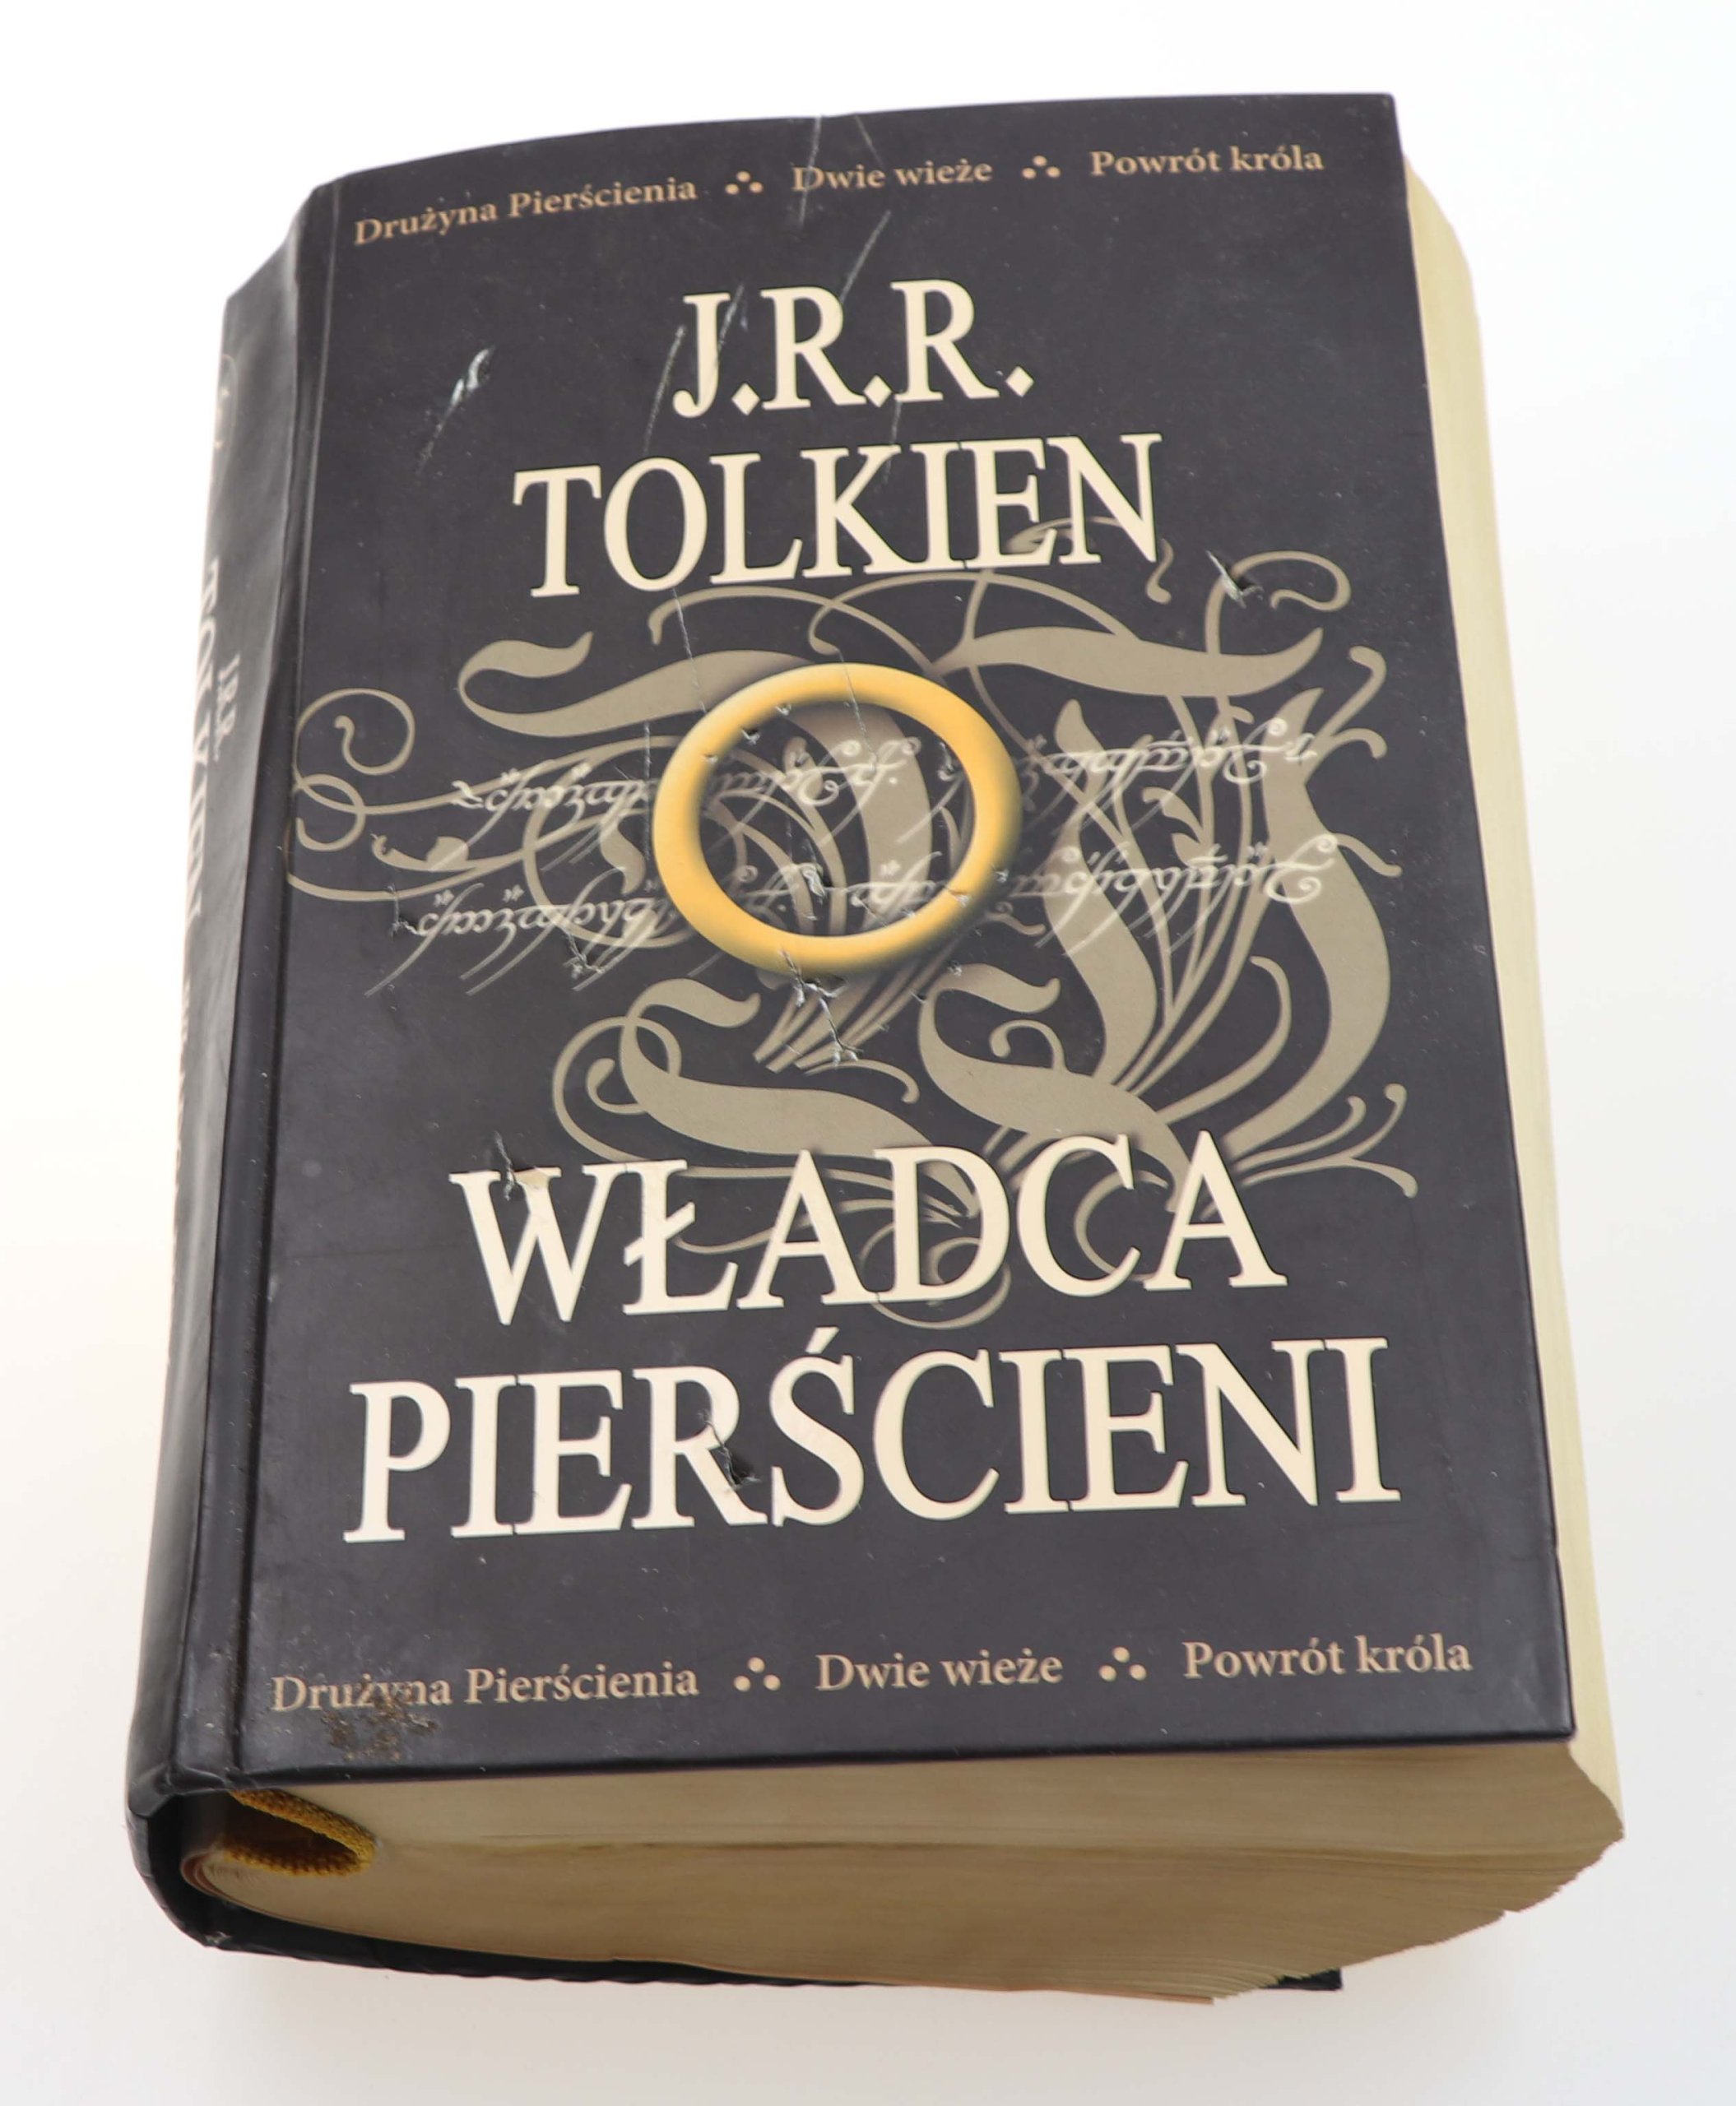 WŁADCA PIERŚCIENI J.R.R. Tolkien 2013 - 7043210679 - oficjalne archiwum  Allegro